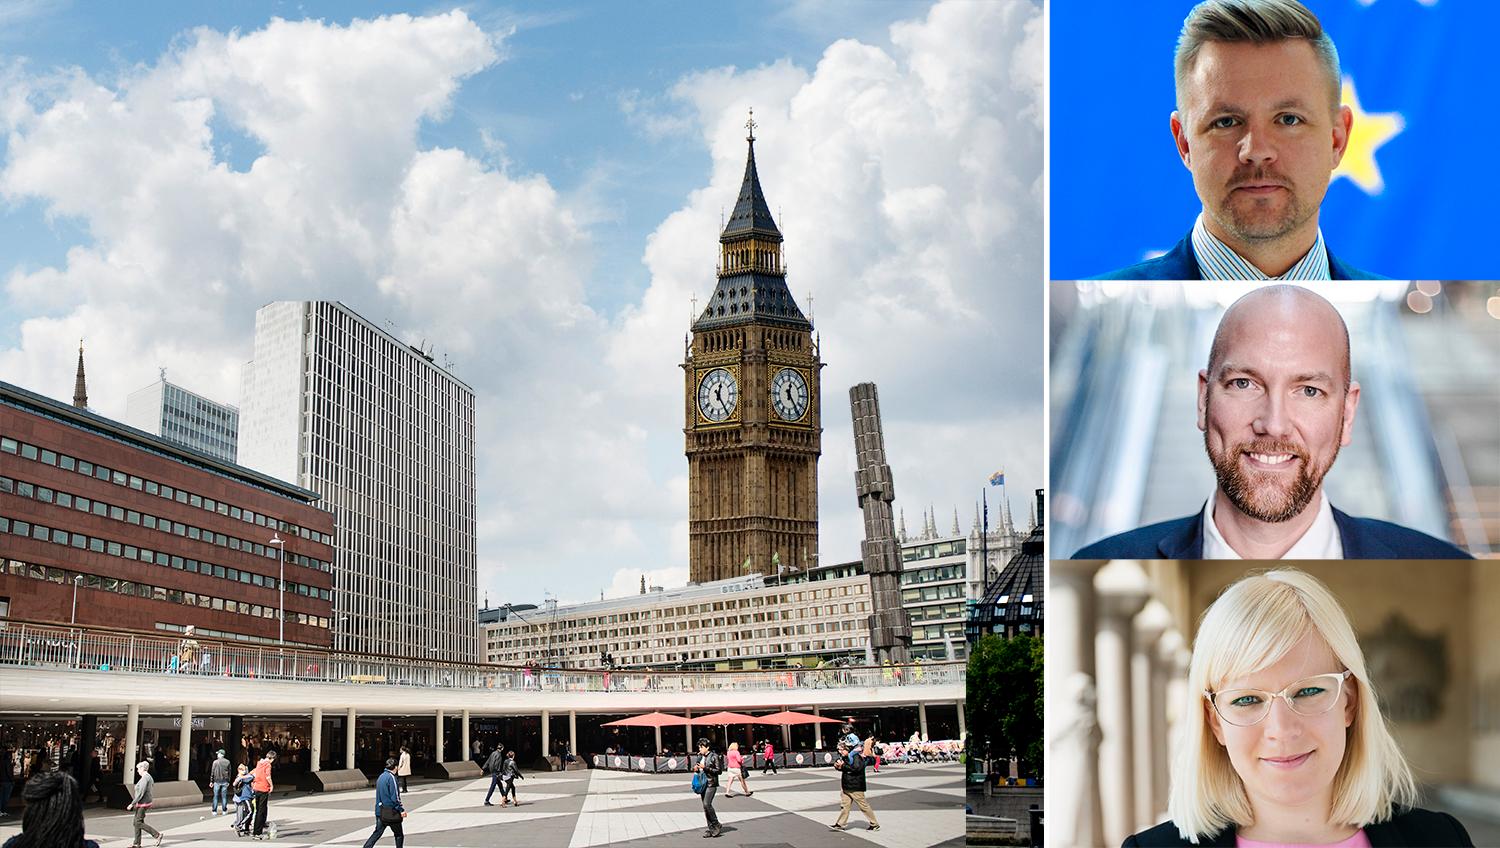 Efter Storbritanniens utträde ur EU så har möjligheten att ta över London som en av Europas ledande städer dykt upp. Men först måste en rad reformer genomföras, skriver debattörerna.  Bilden är ett montage.